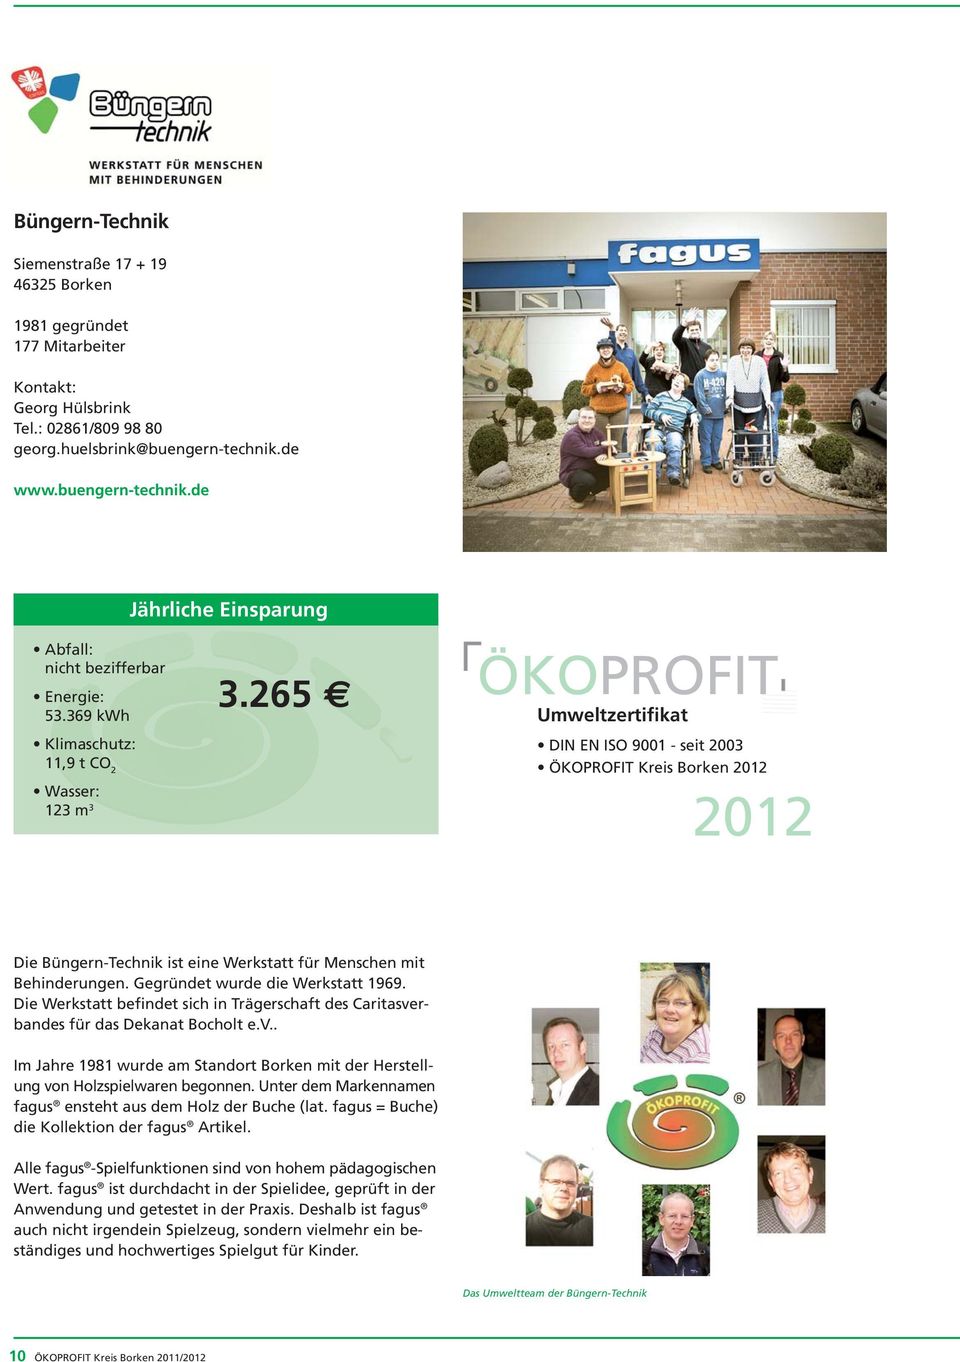 265 ÖKOPROFIT Umweltzertifikat DIN EN ISO 9001 - seit 2003 ÖKOPROFIT Kreis Borken 2012 2012 Die Büngern-Technik ist eine Werkstatt für Menschen mit Behinderungen. Gegründet wurde die Werkstatt 1969.